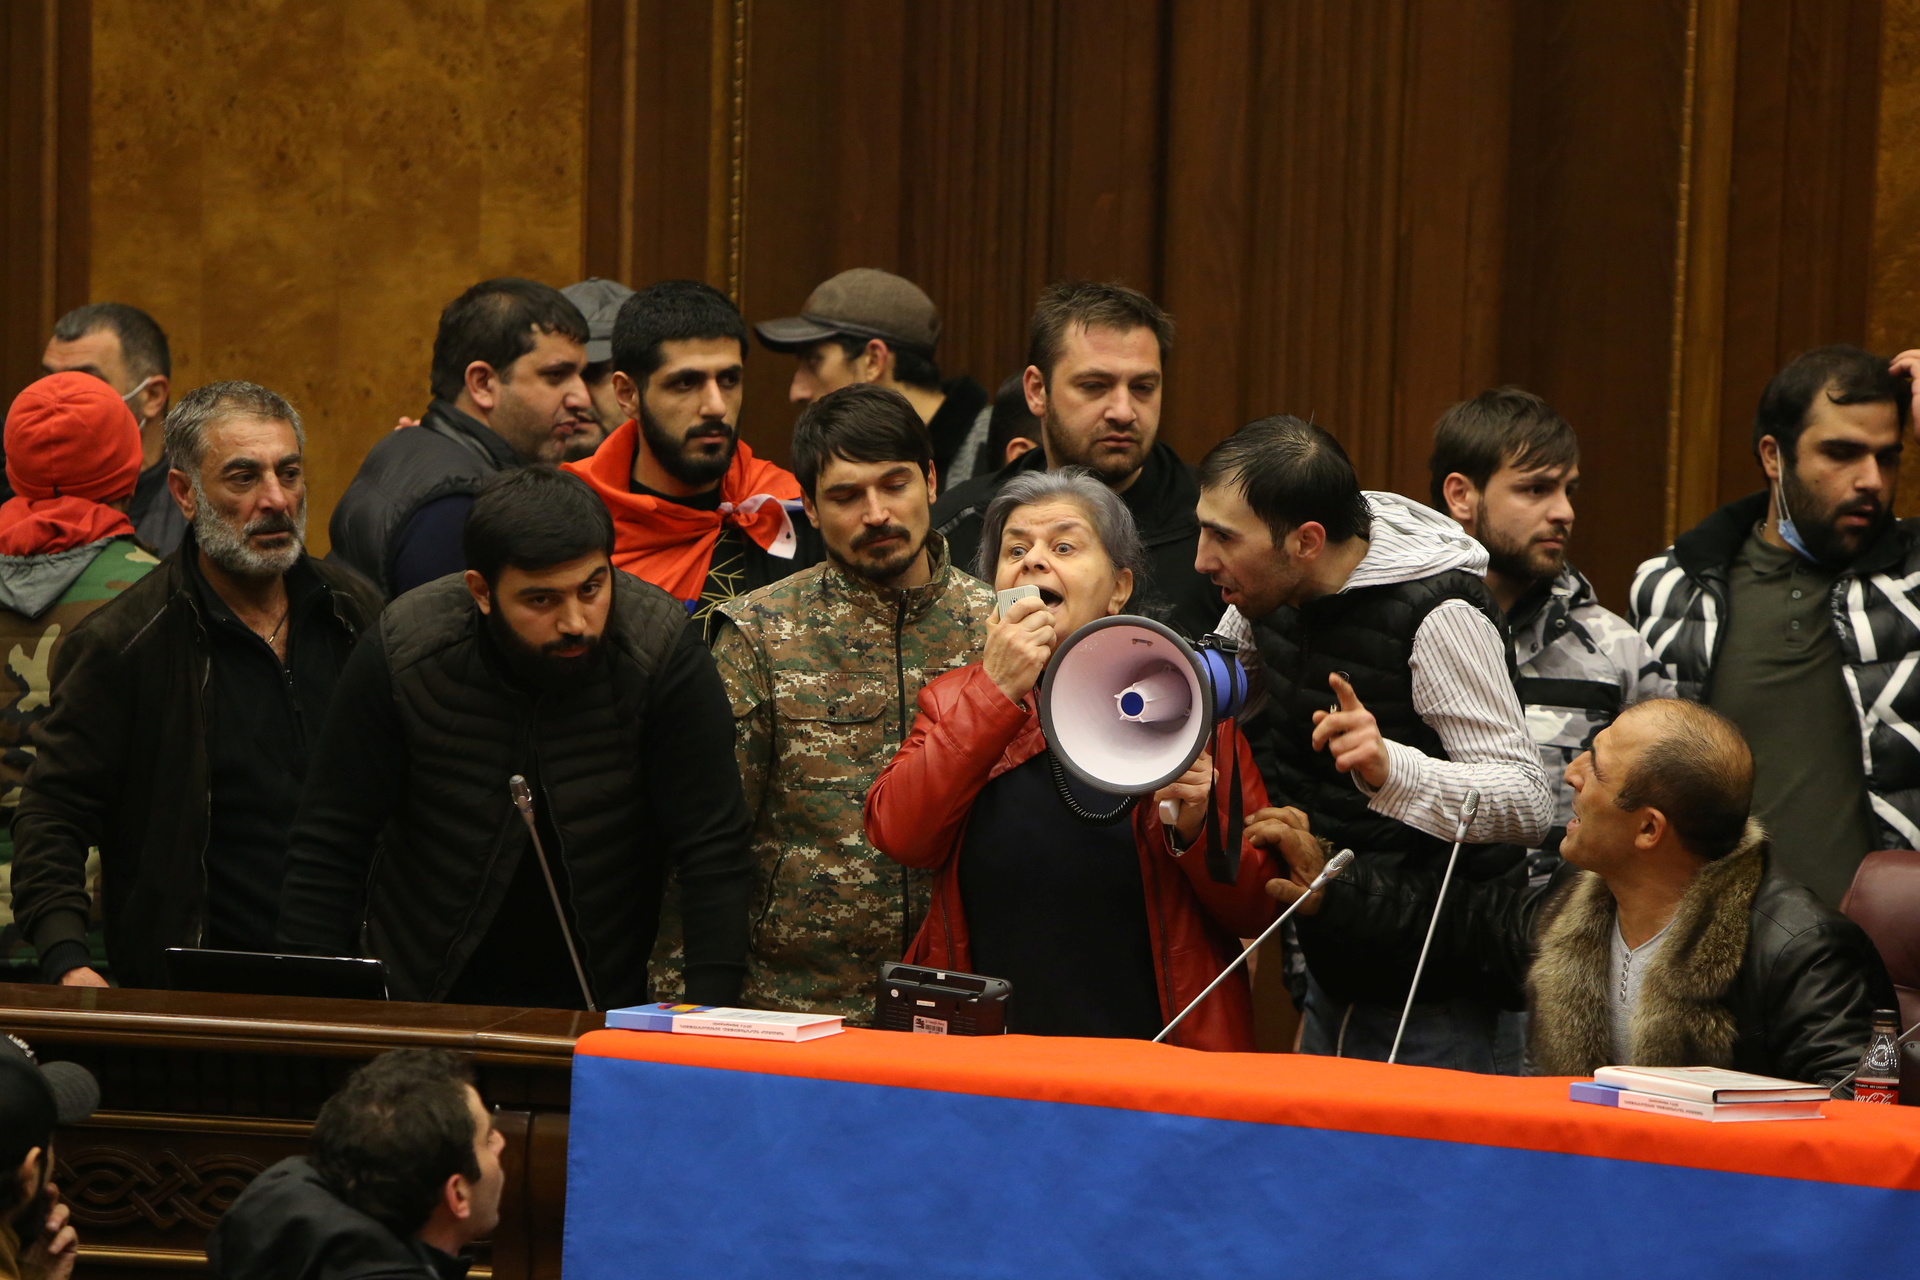 Захватив парламент Армении, протестующие устроили вакханалию. Спикер парламента Армении находится в больнице после избиения